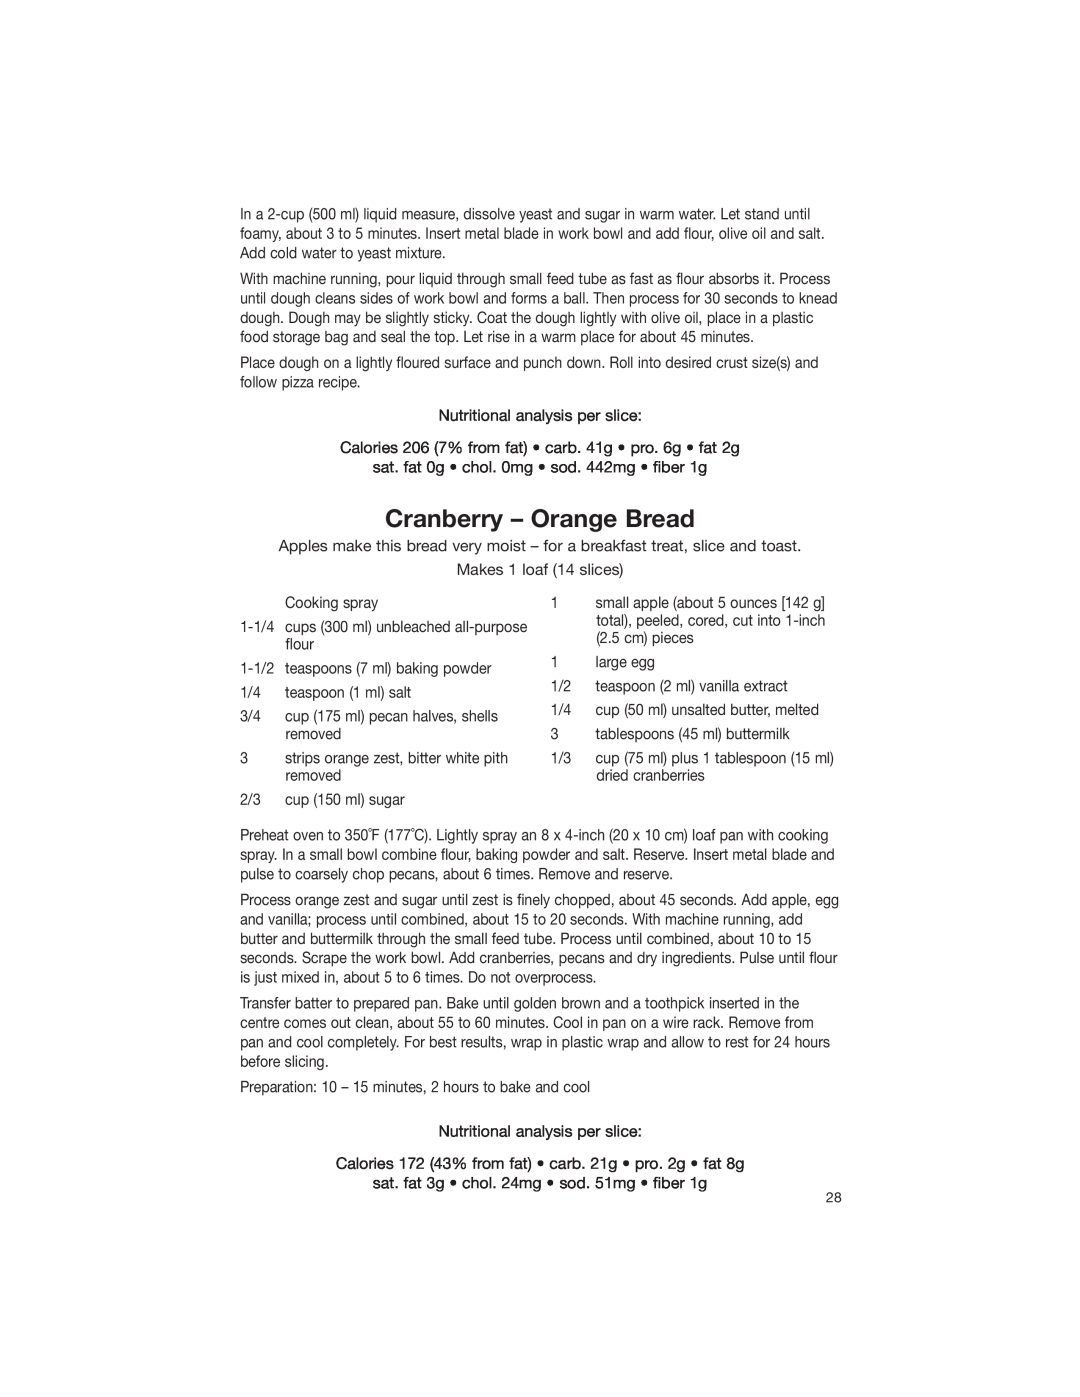 Cuisinart DLC-2007NC manual Cranberry - Orange Bread 